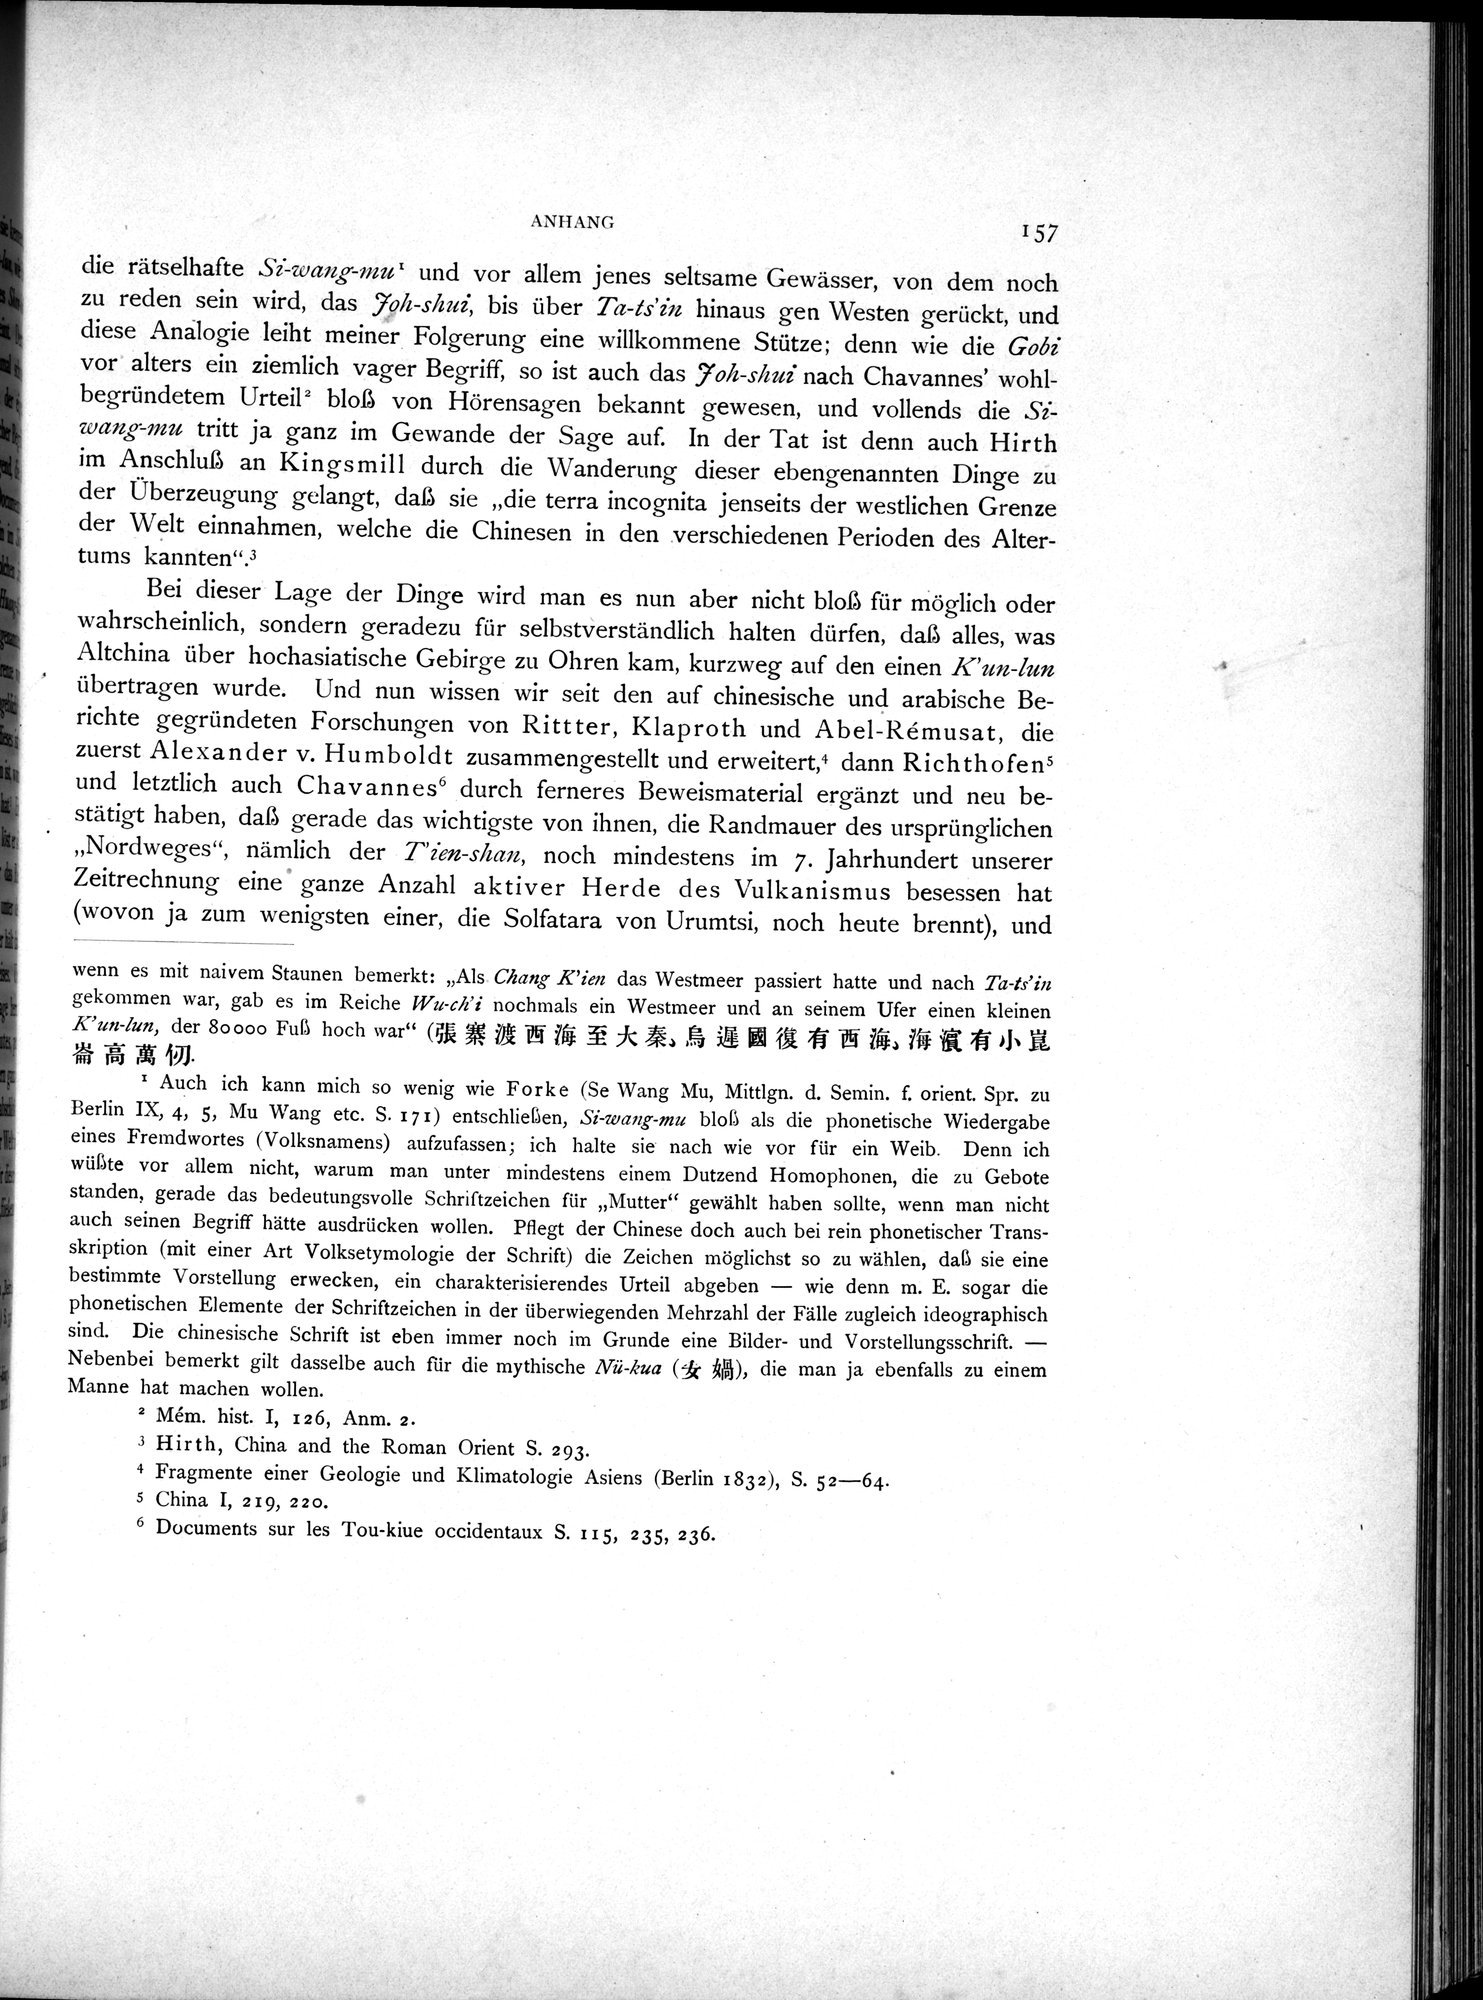 Die Chinesischen Handschriften- und sonstigen Kleinfunde Sven Hedins in Lou-lan : vol.1 / Page 181 (Grayscale High Resolution Image)